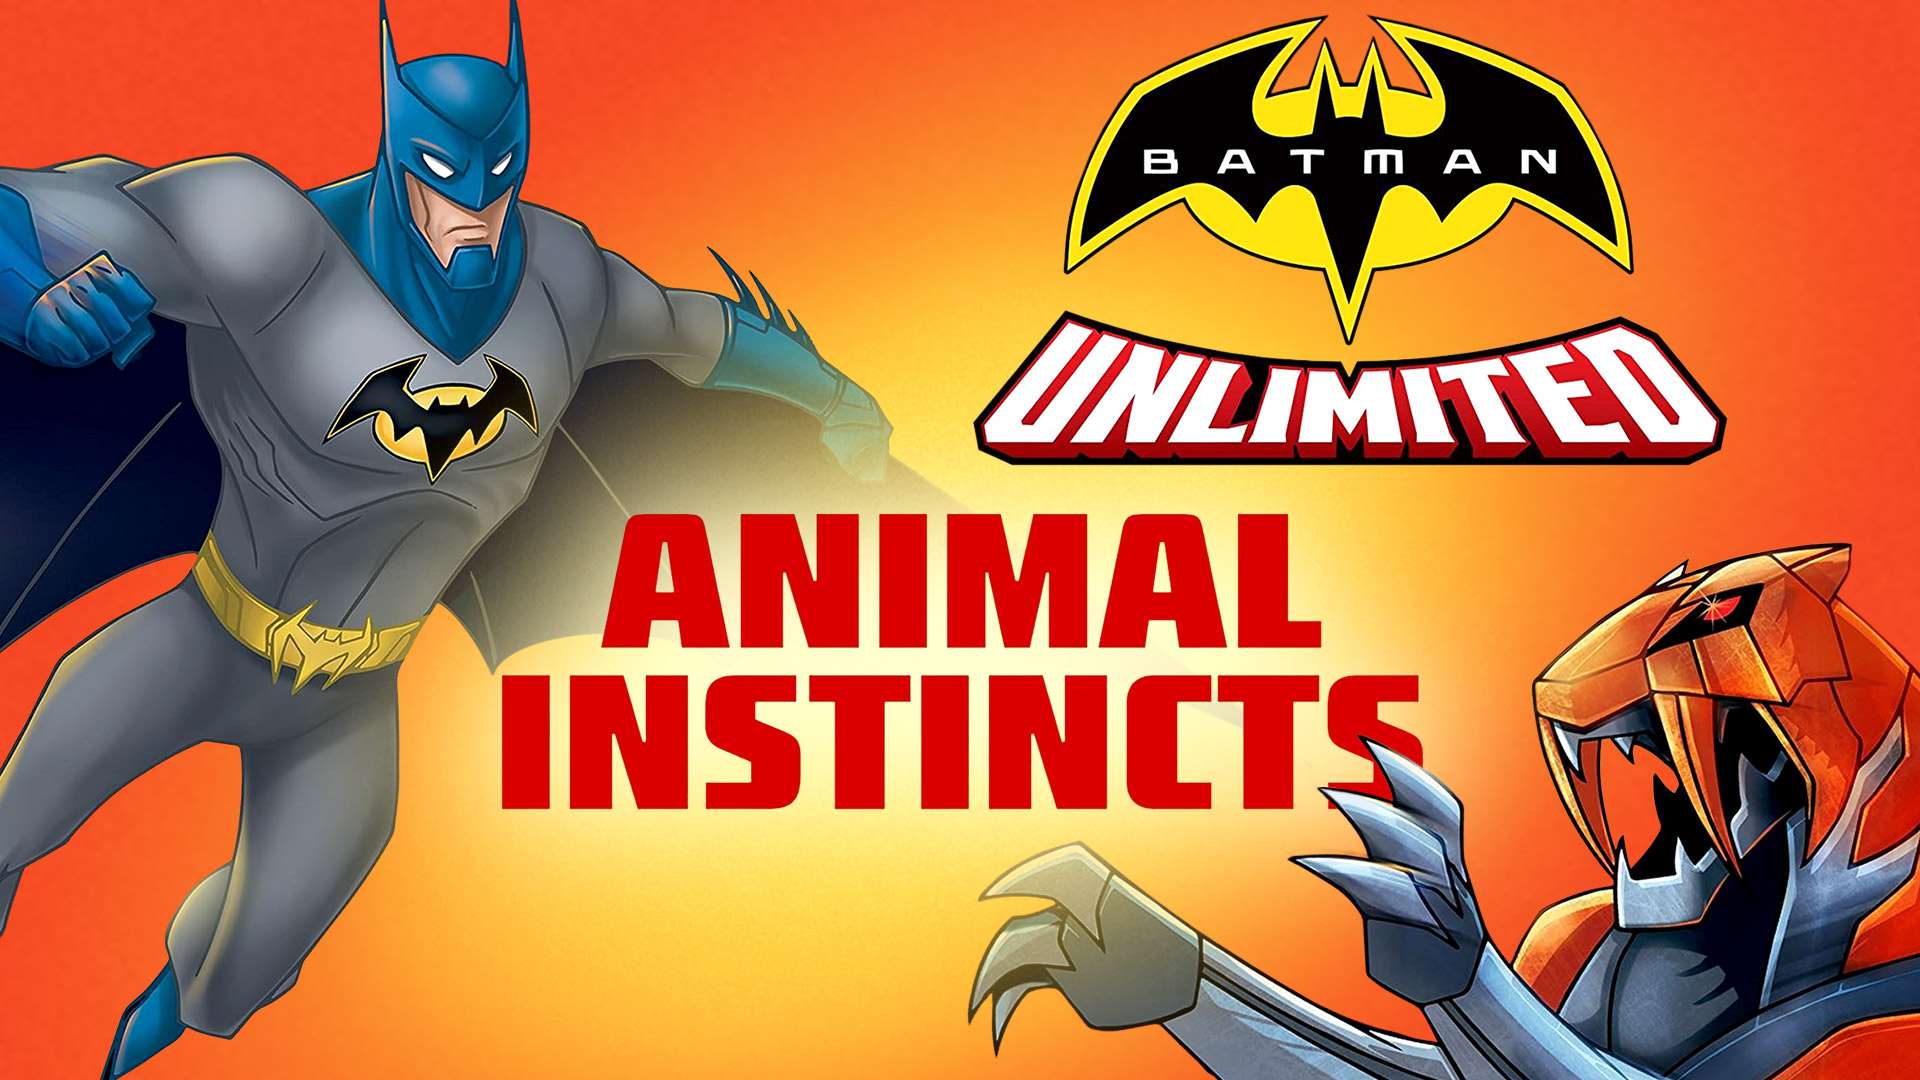 فيلم Batman Unlimited Animal Instincts 2015 مترجم كامل HD